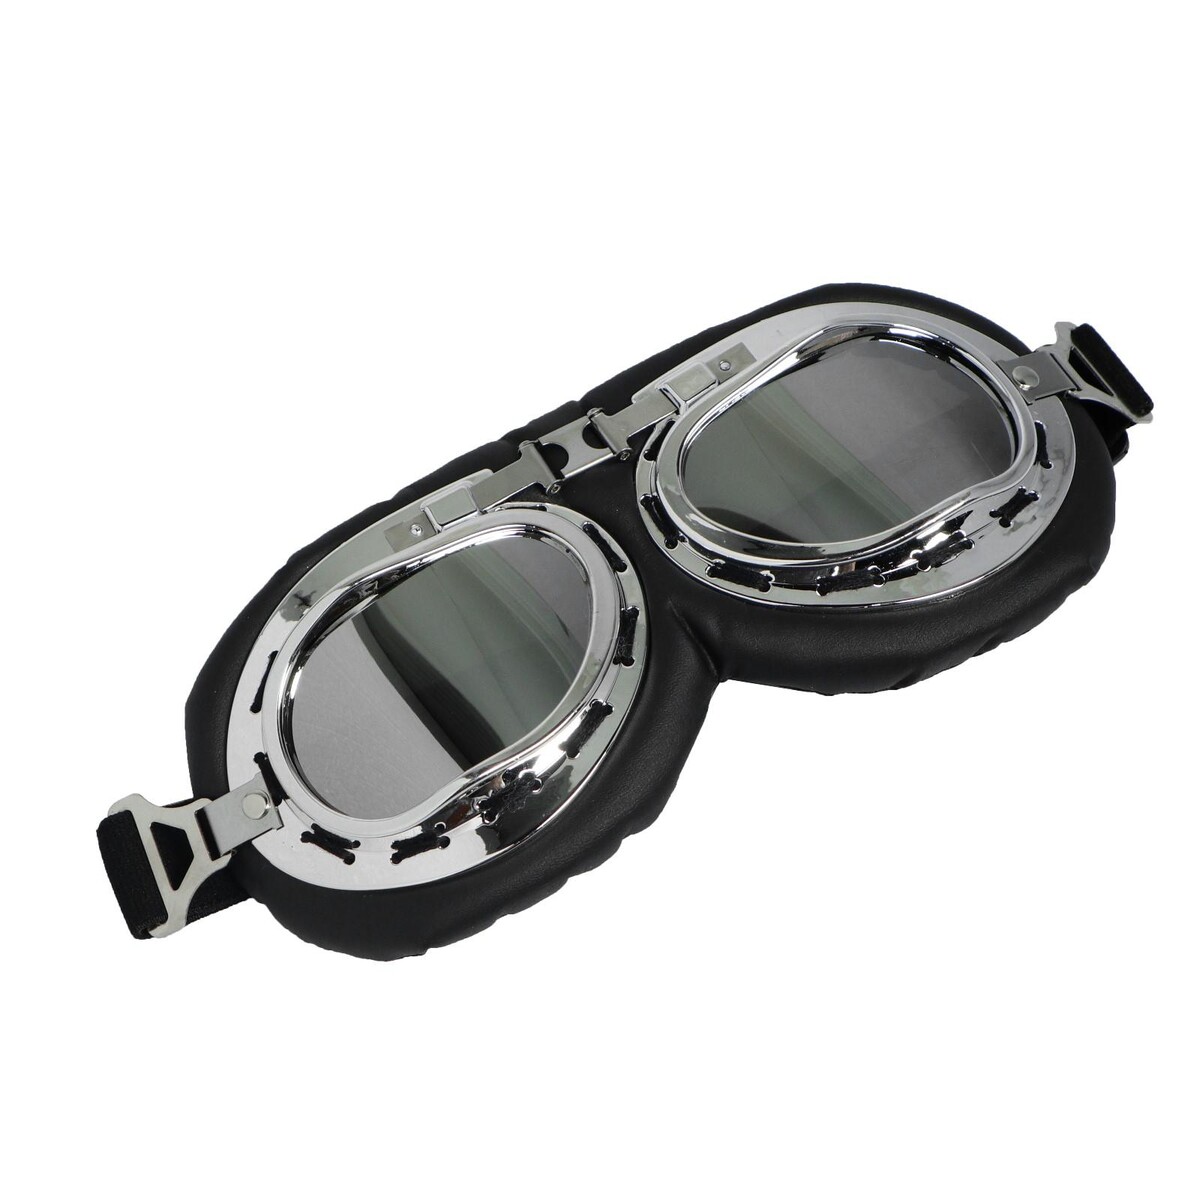 Очки для езды на мототехнике ретро, стекло хром, черные ерш для туалета solinne blanco b 51114 стекло сатин хром стекло 2522 022